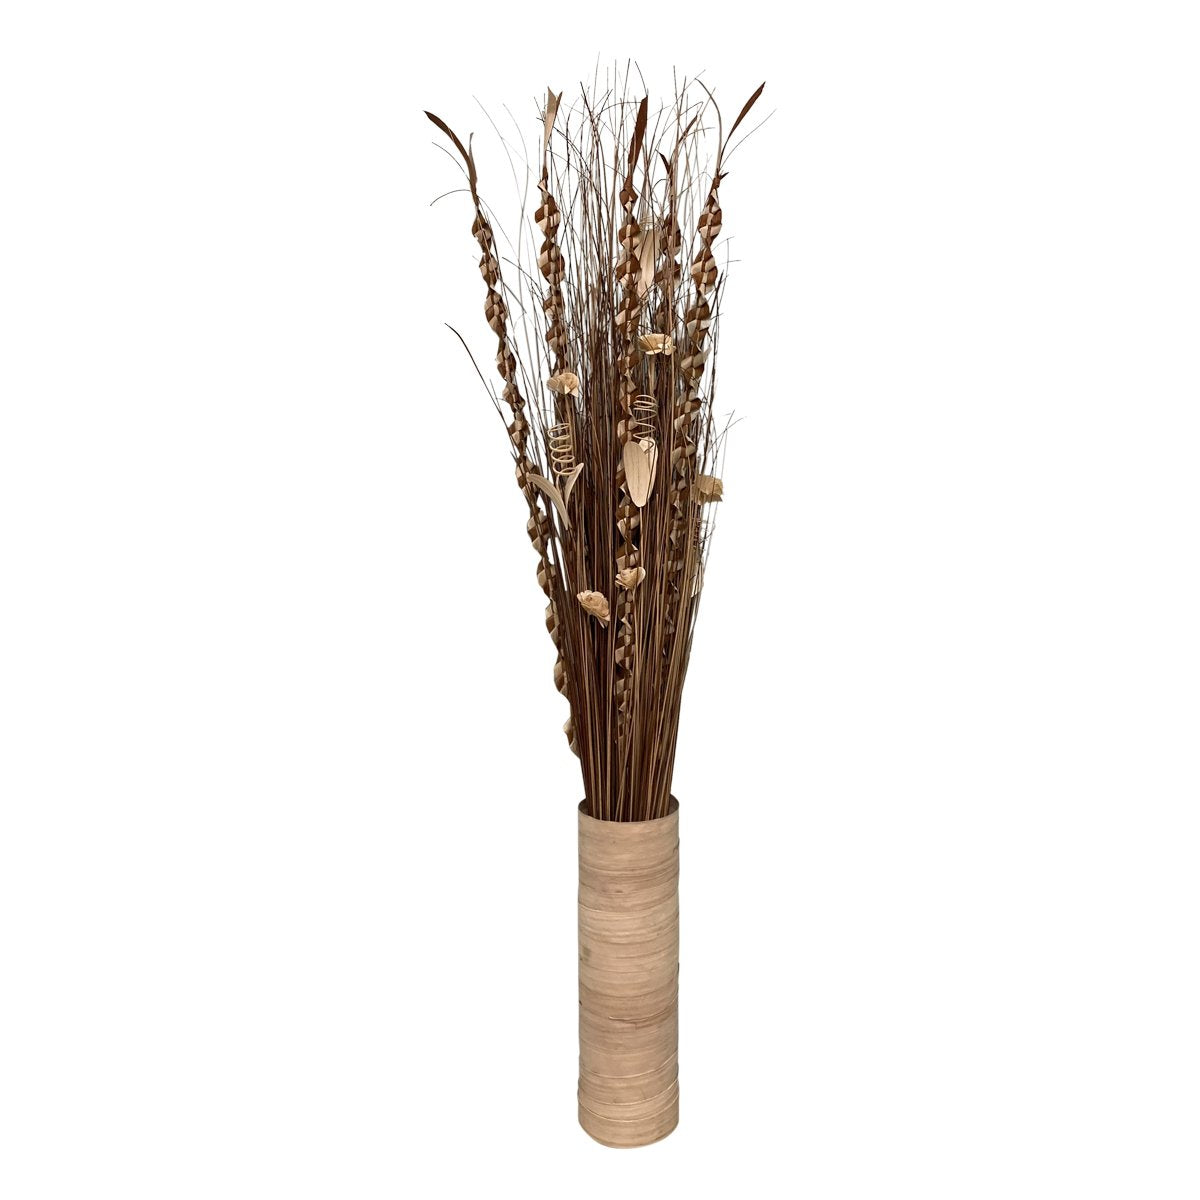 Plaited Dried Palm Leaf Arrangement In A Vase 100cm - Kaftan direct